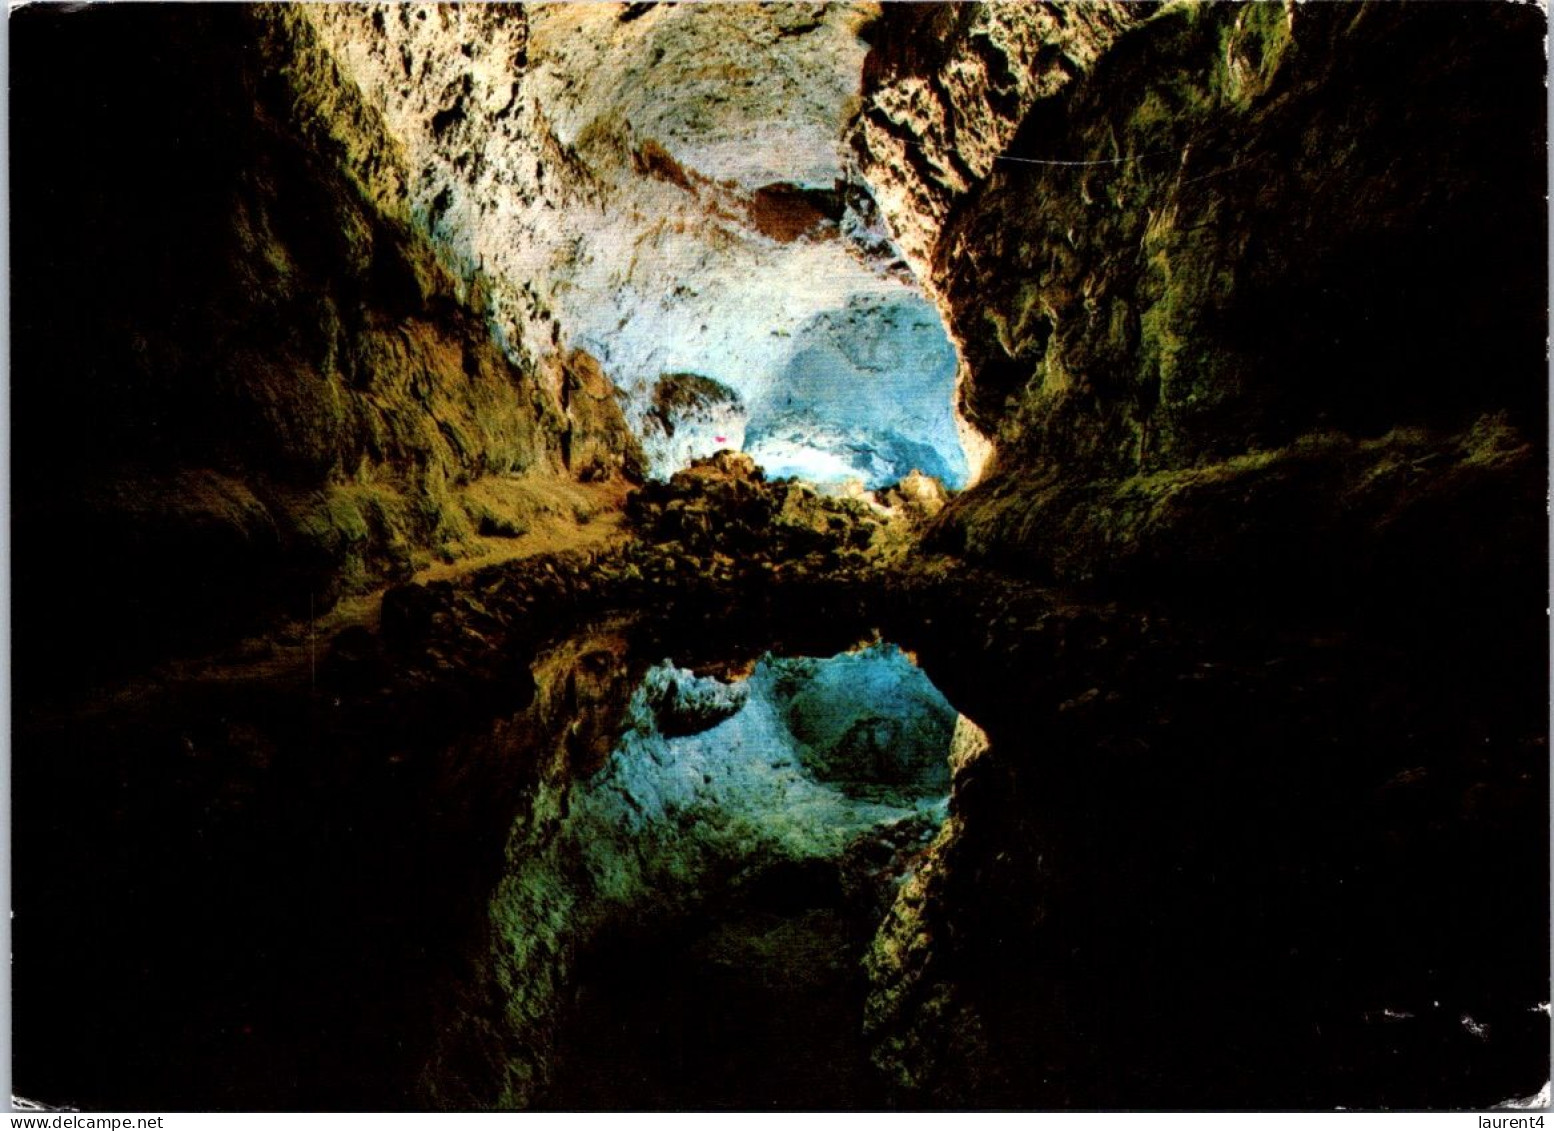 28-7-2023 (3 S 59) Spain - Lanzarote Island Caves - Lanzarote